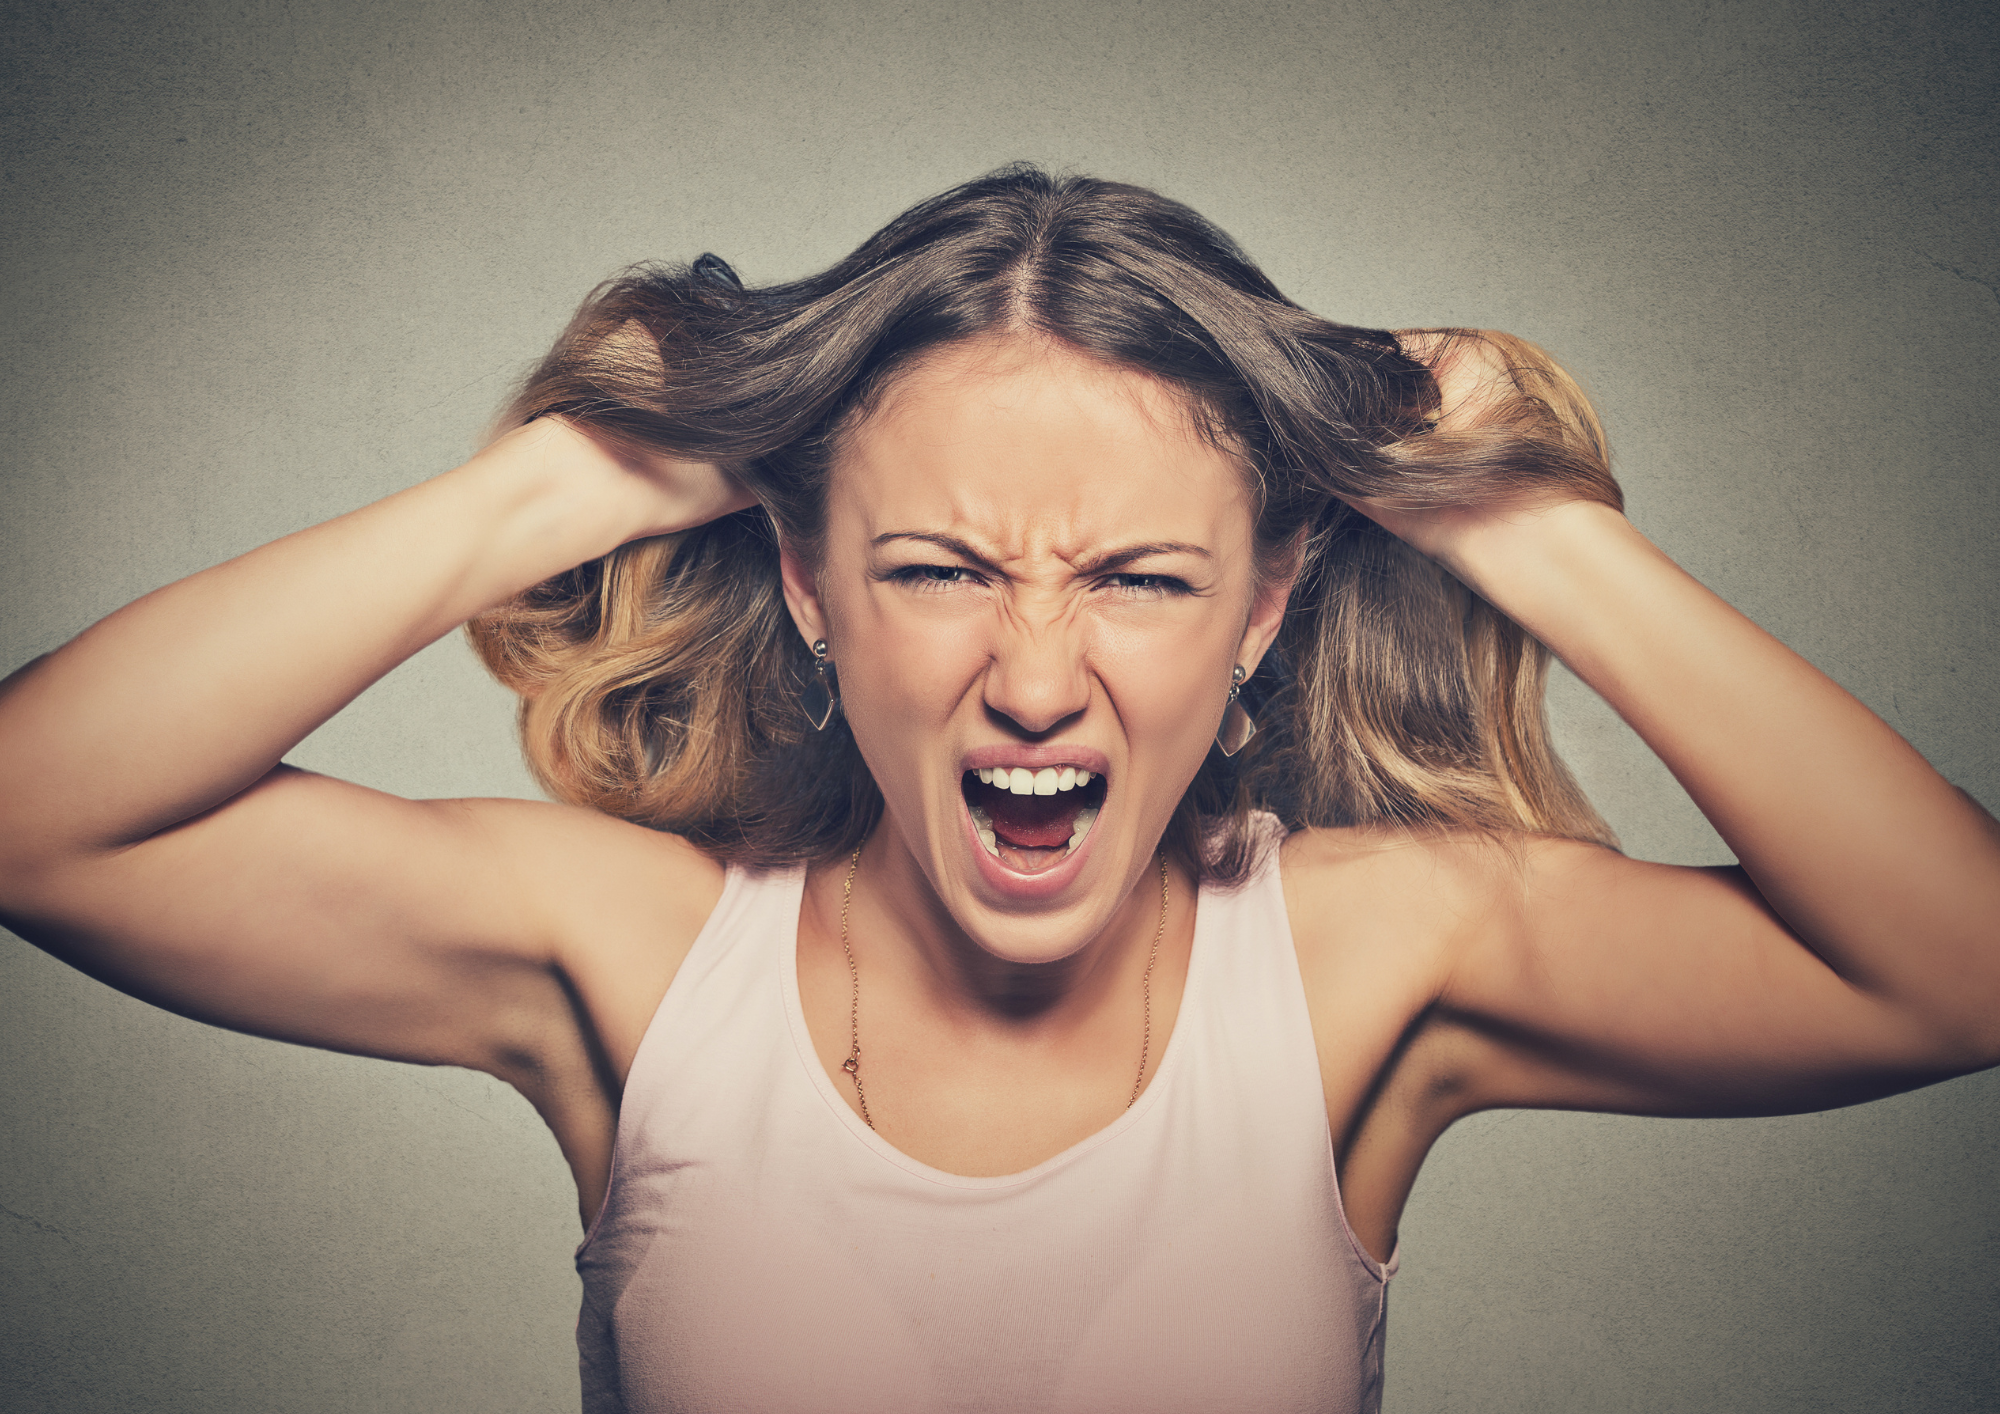 Comment gérer la colère ? Stratégies et Techniques Efficaces